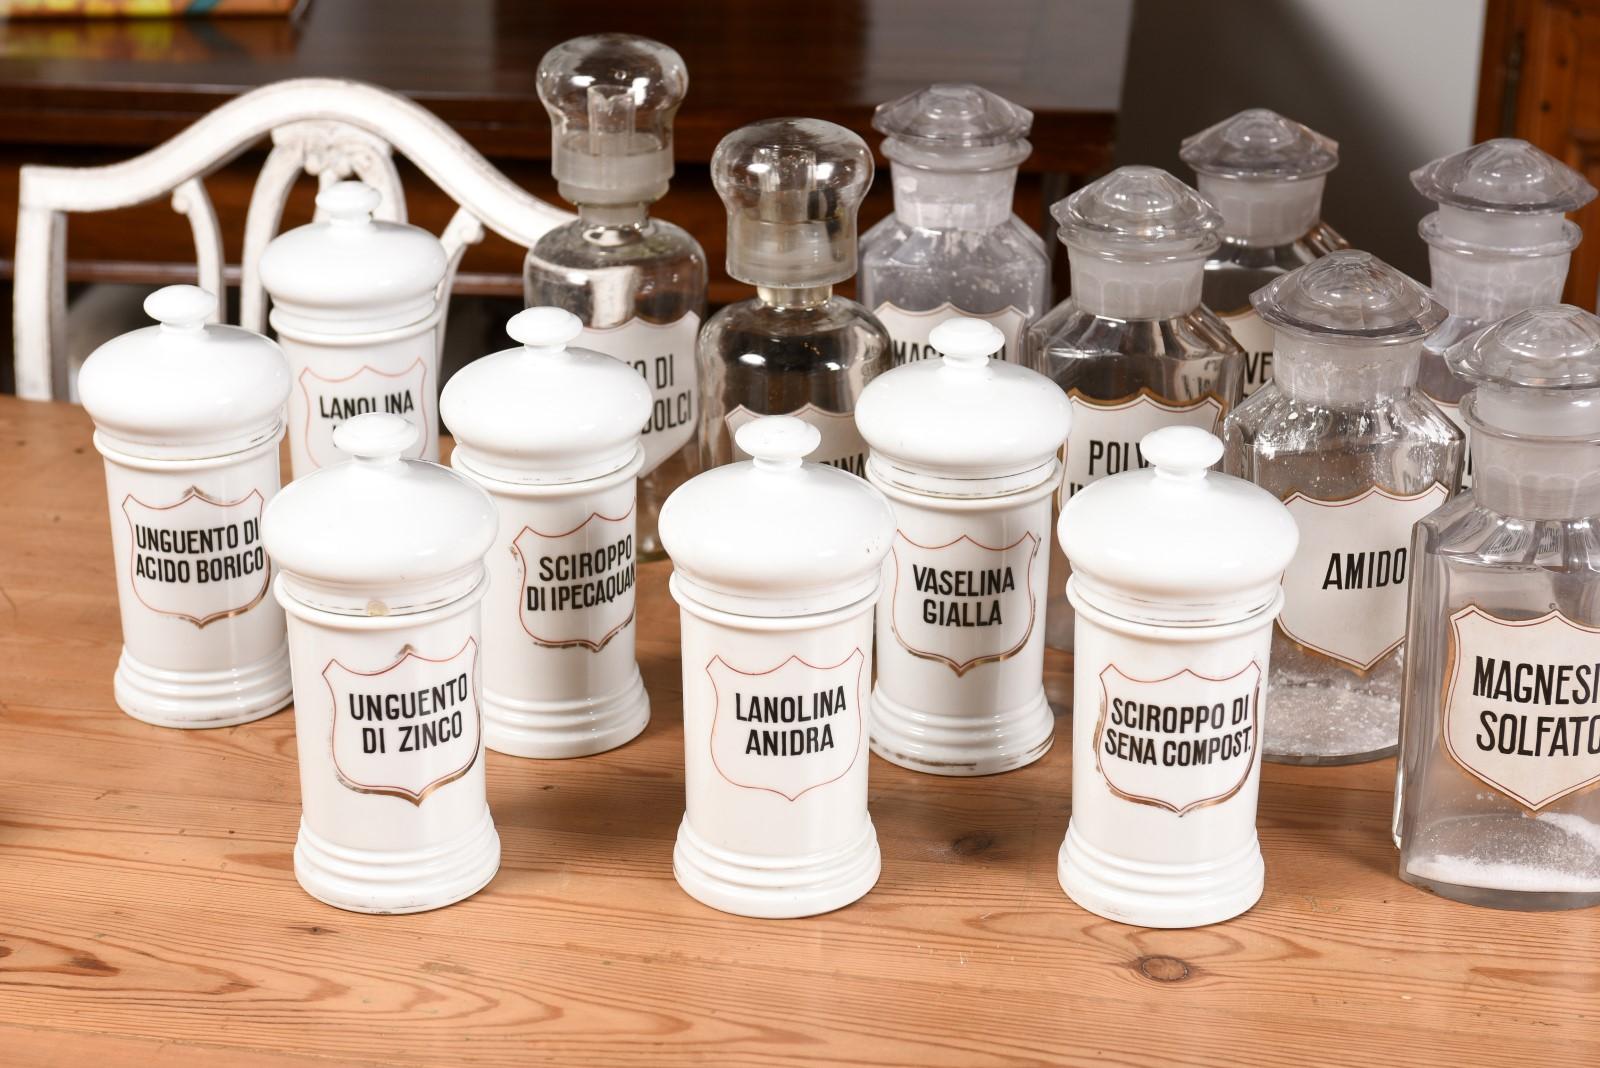 36 Apothekergefäße aus italienischem Glas oder Porzellan im Vintage-Stil mit Etiketten, verkauft pro Stück im Angebot 4